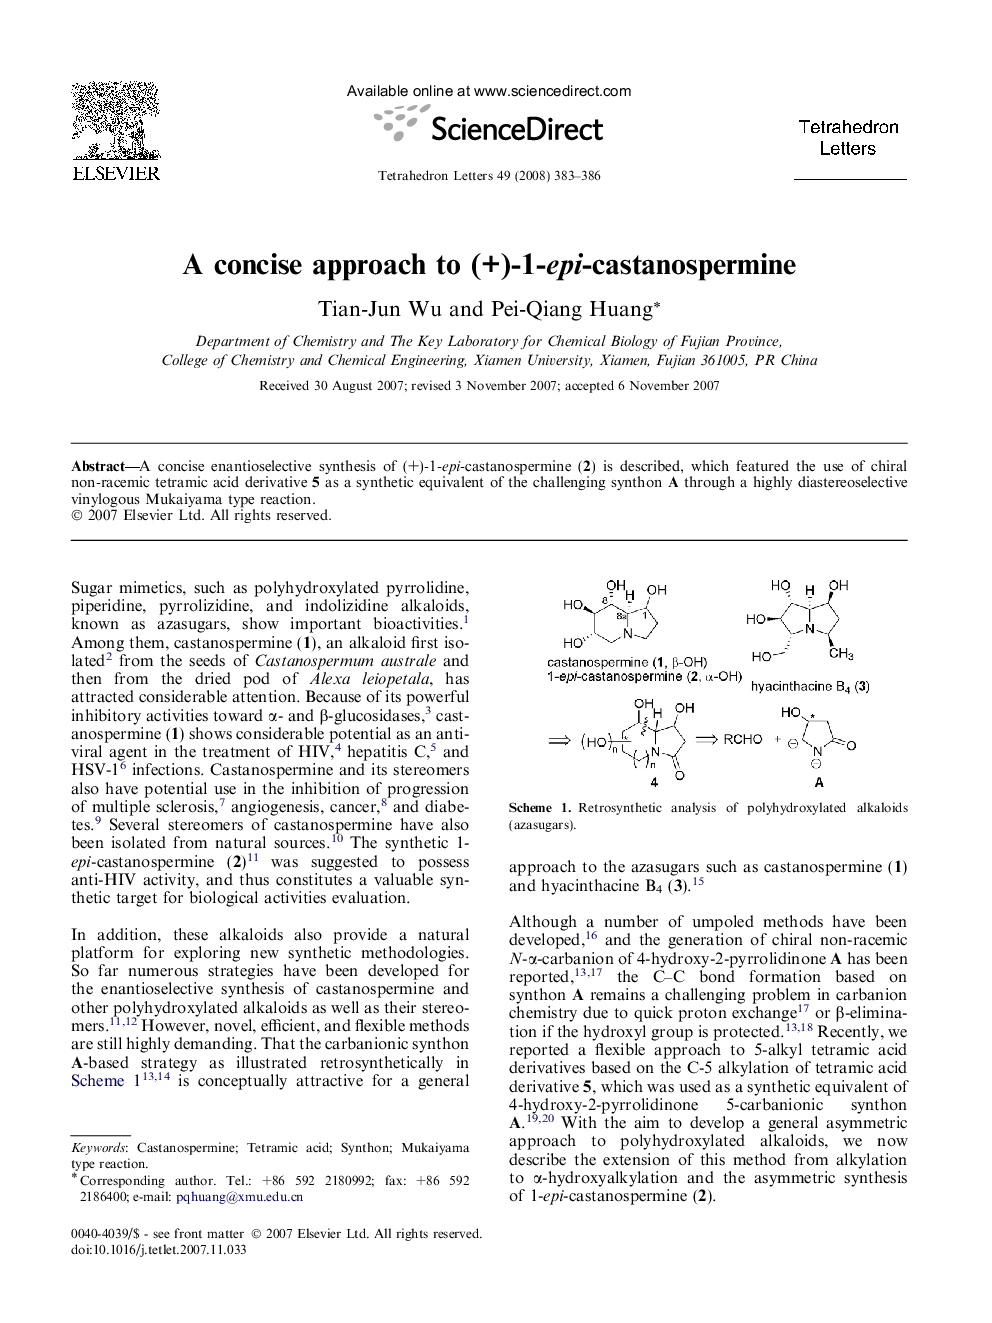 A concise approach to (+)-1-epi-castanospermine